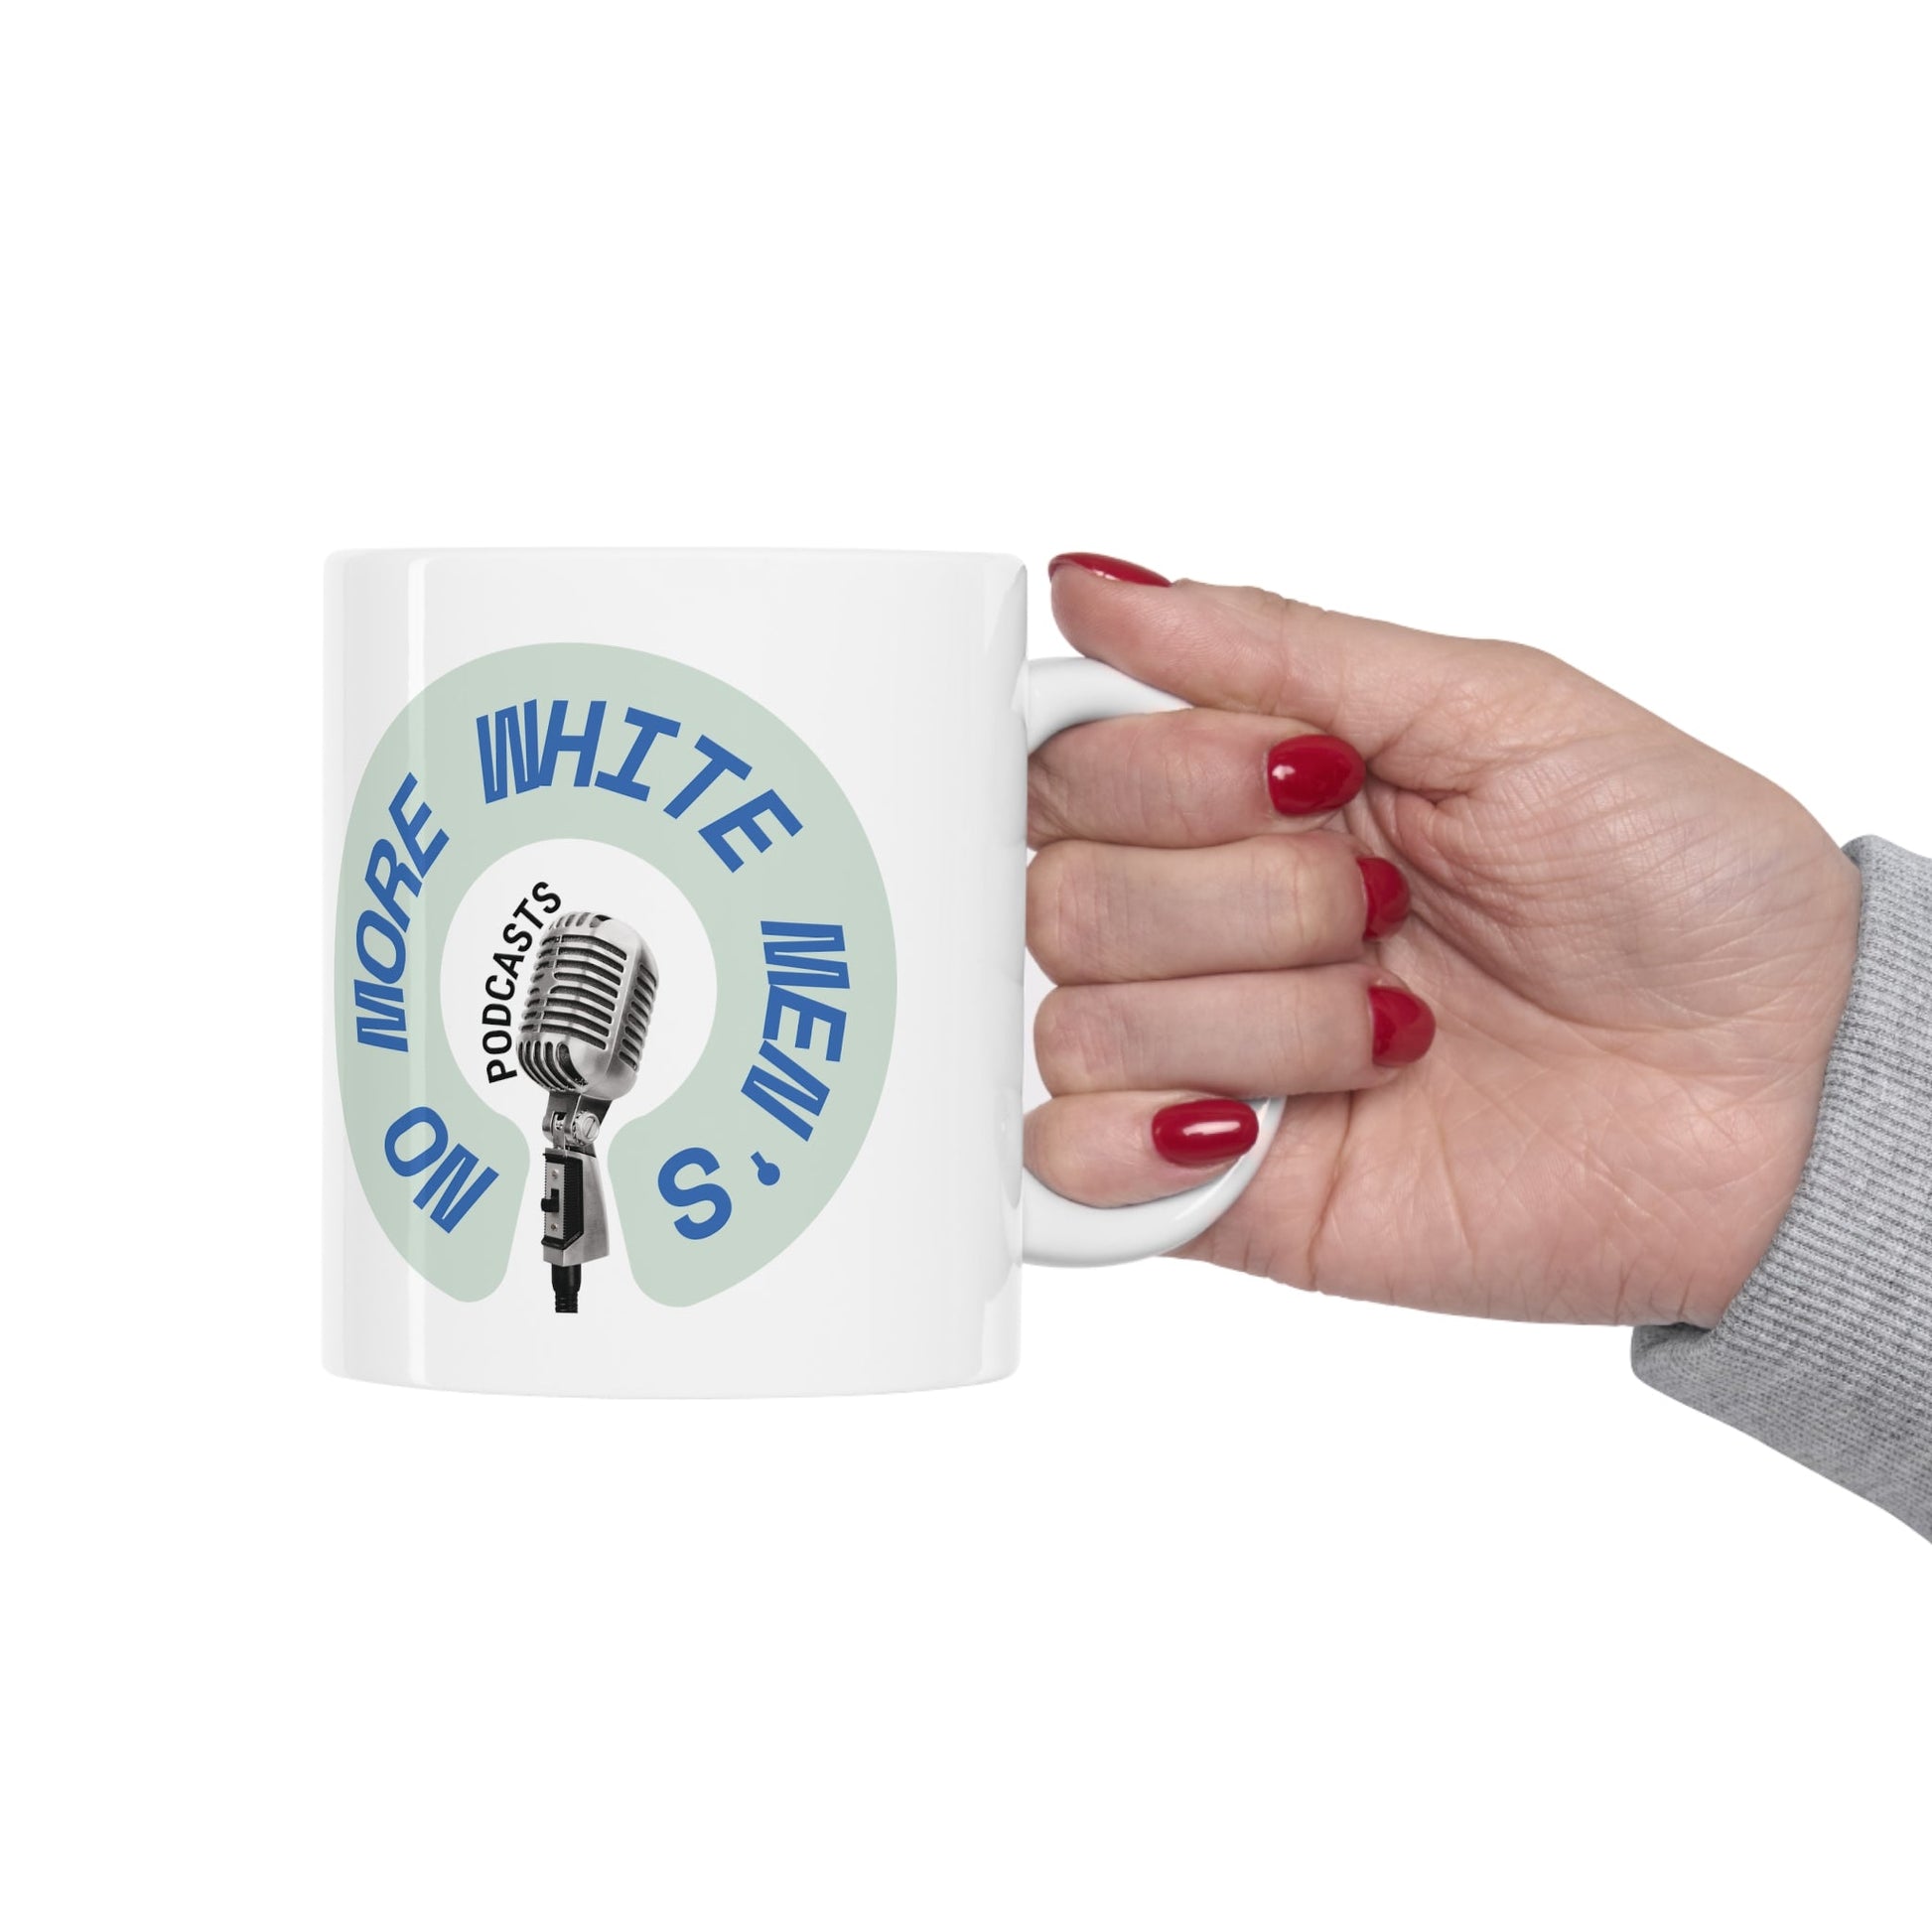 No More White Men's Podcasts Ceramic Mug 11oz